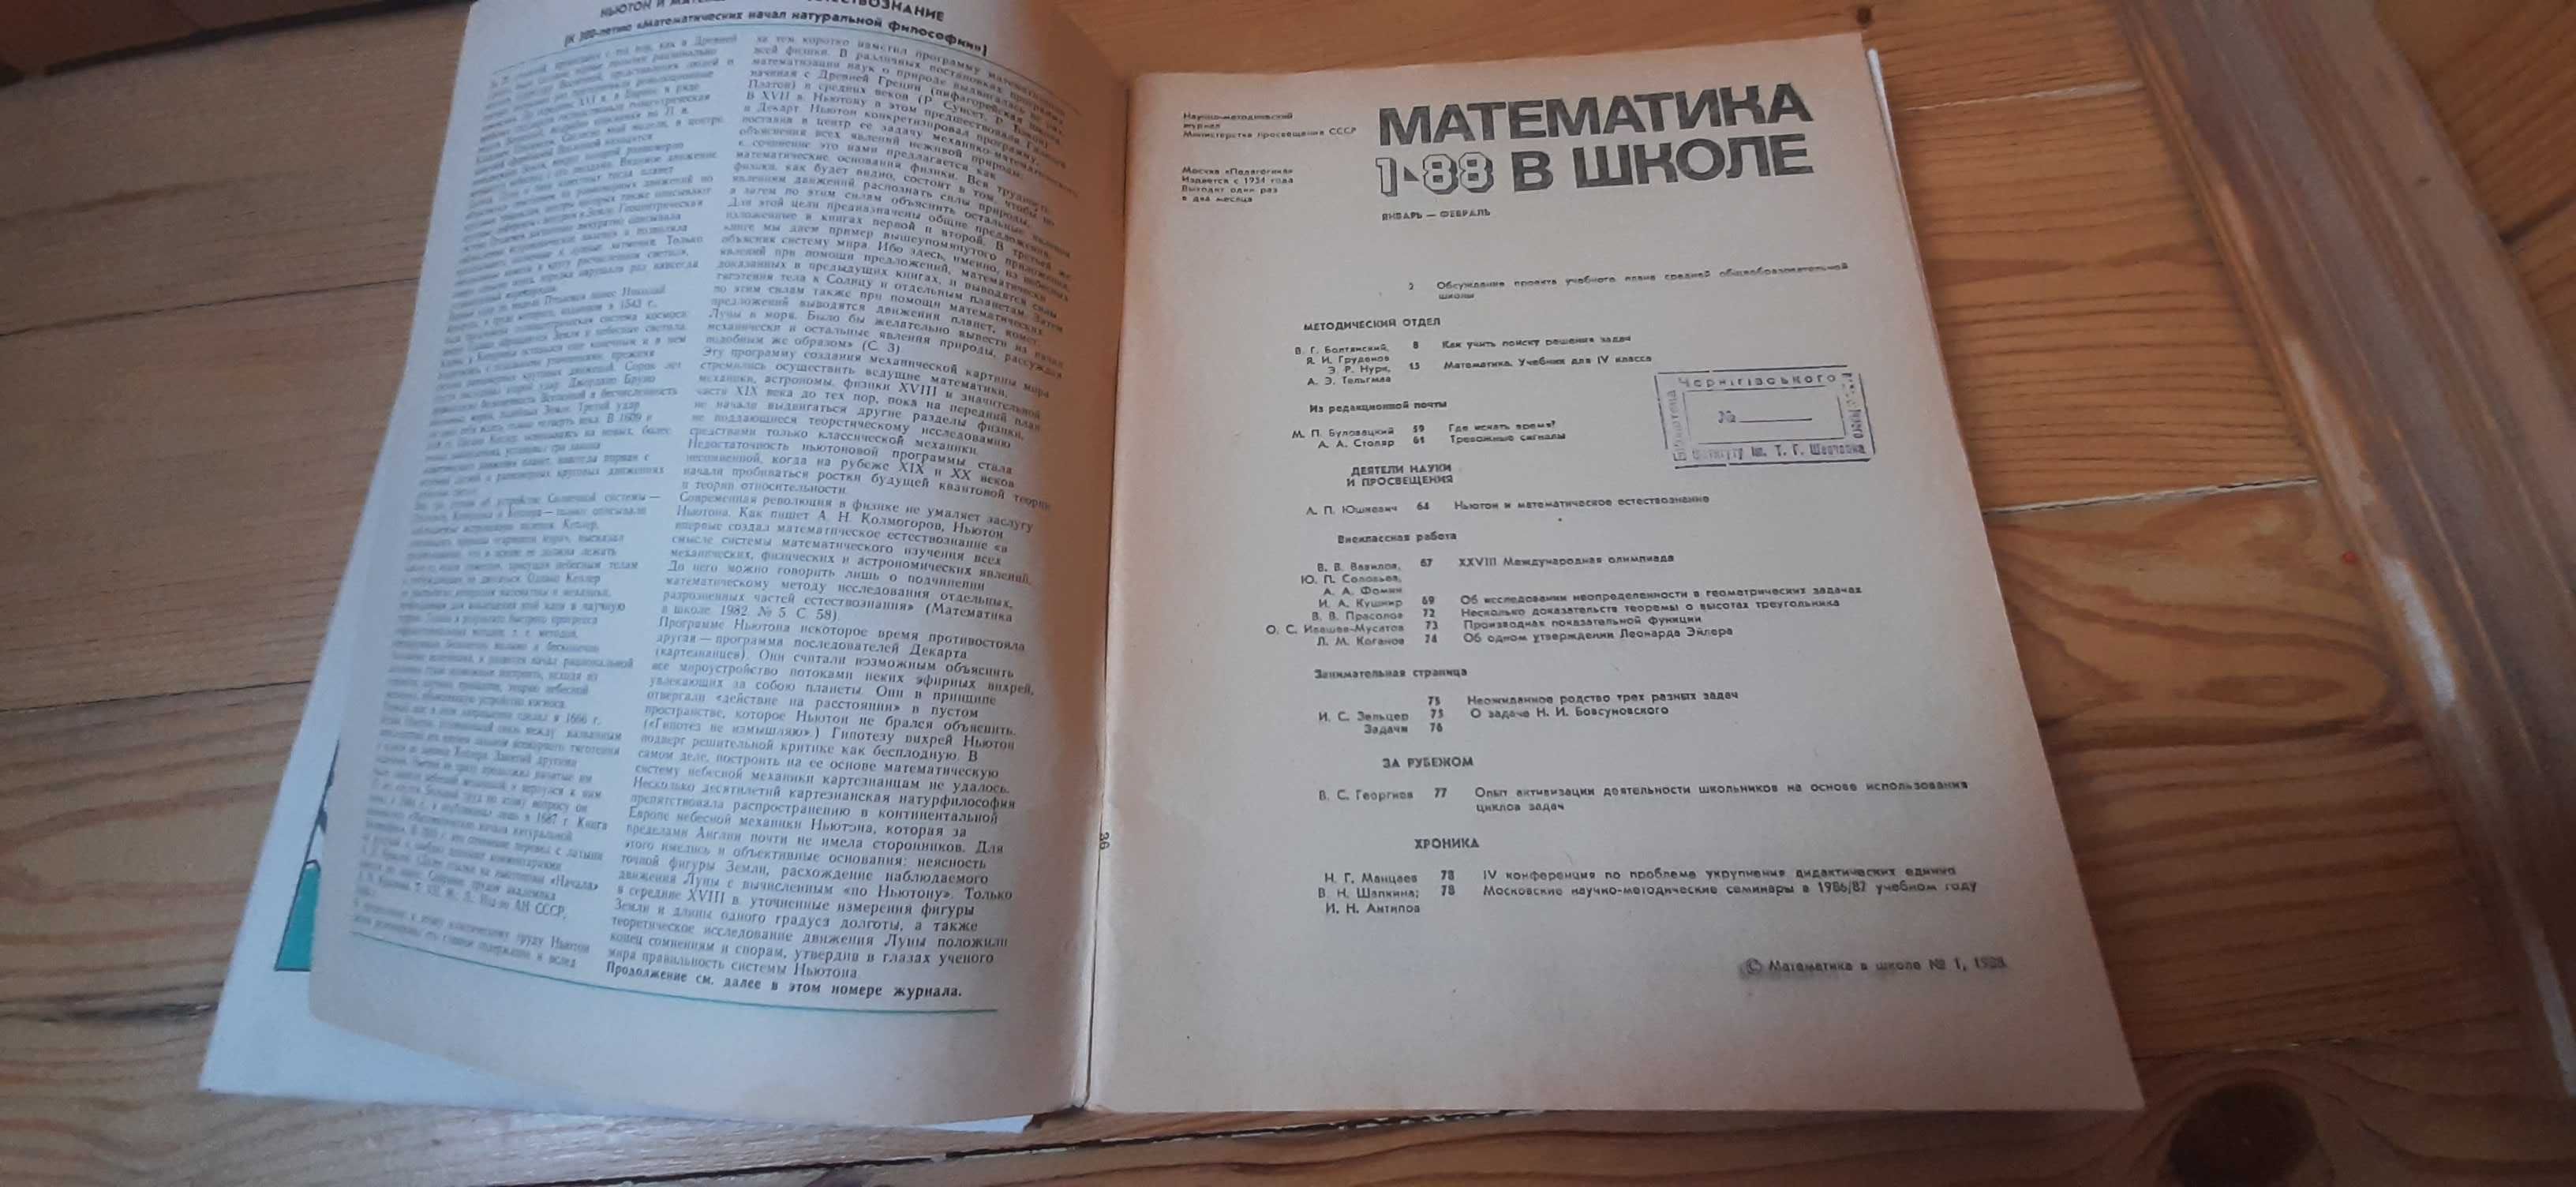 Математика в школе. Научно-метадич журнал 6-80, 6-81, 4-85, 1-88, 4-88